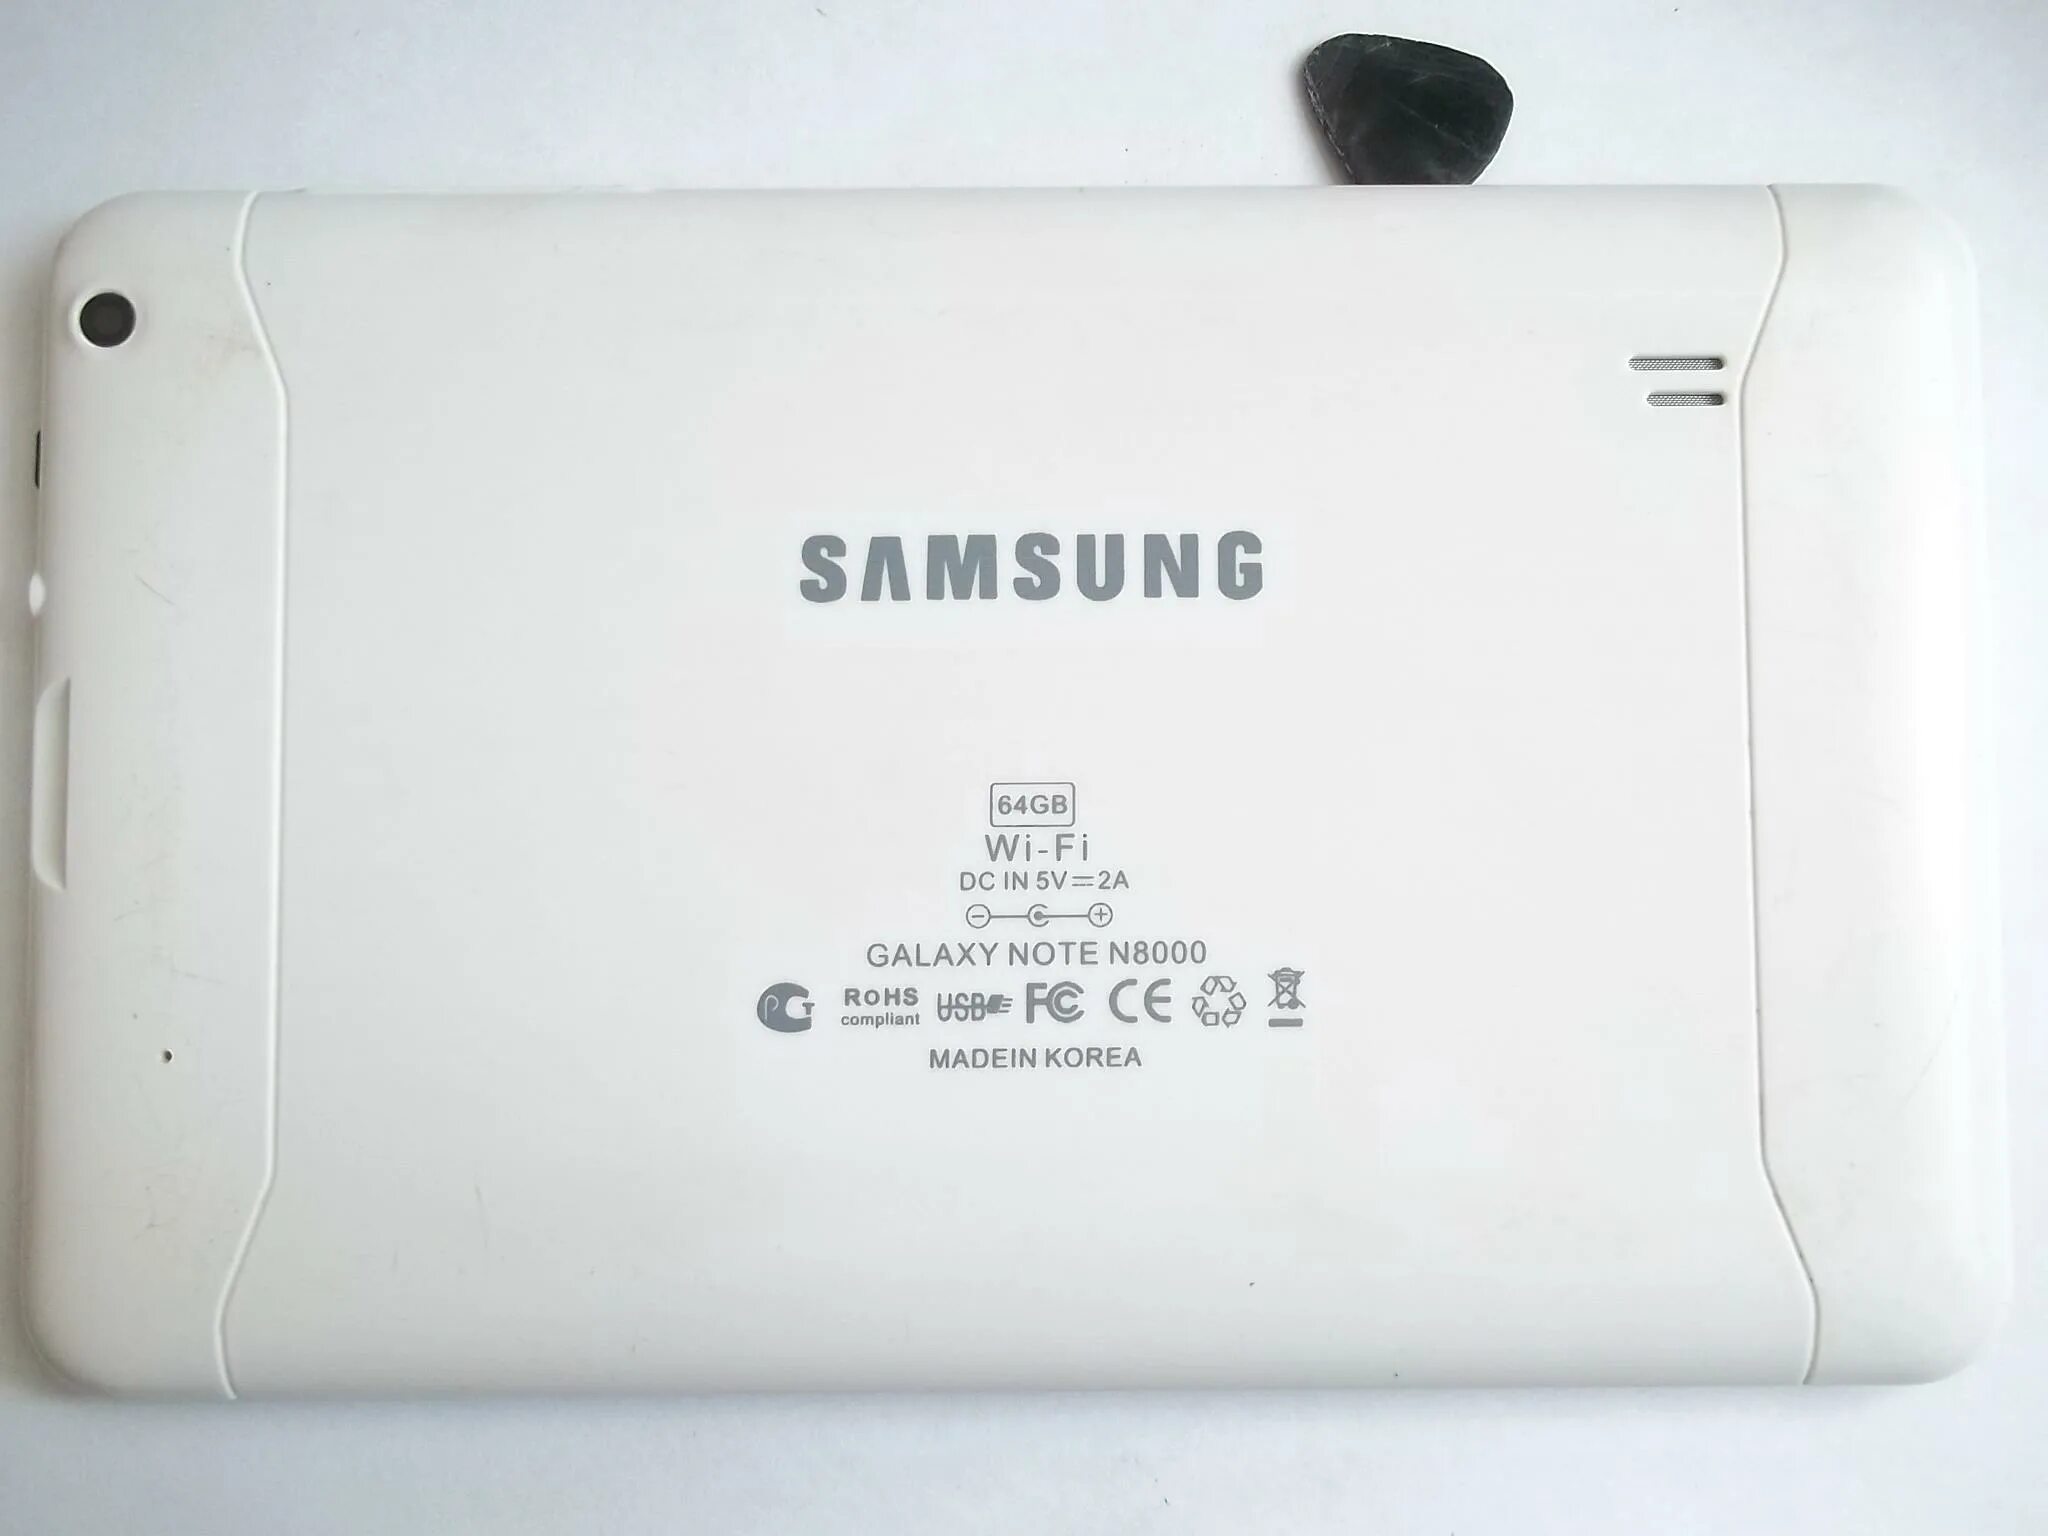 Galaxy note n8000 64gb. Планшет Samsung Galaxy Note n8000. Samsung Galaxy Note 8000 64gb. Планшет Samsung Galaxy Note n8000 64gb. Samsung Galaxy Note 10.1 n8000.